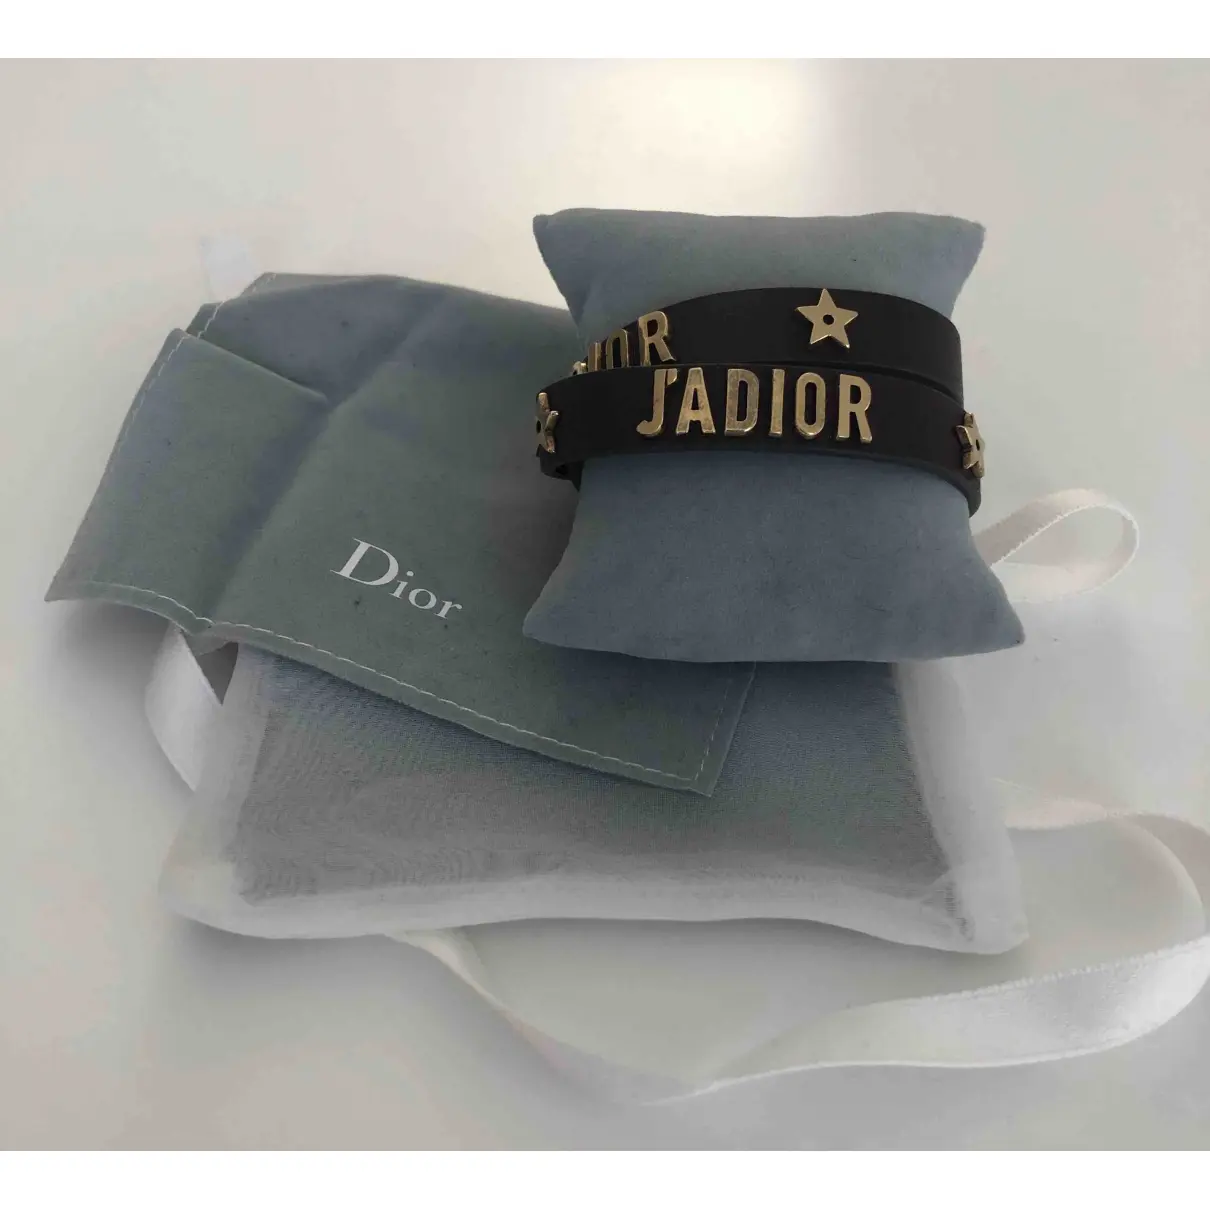 Buy Dior J'adior leather bracelet online